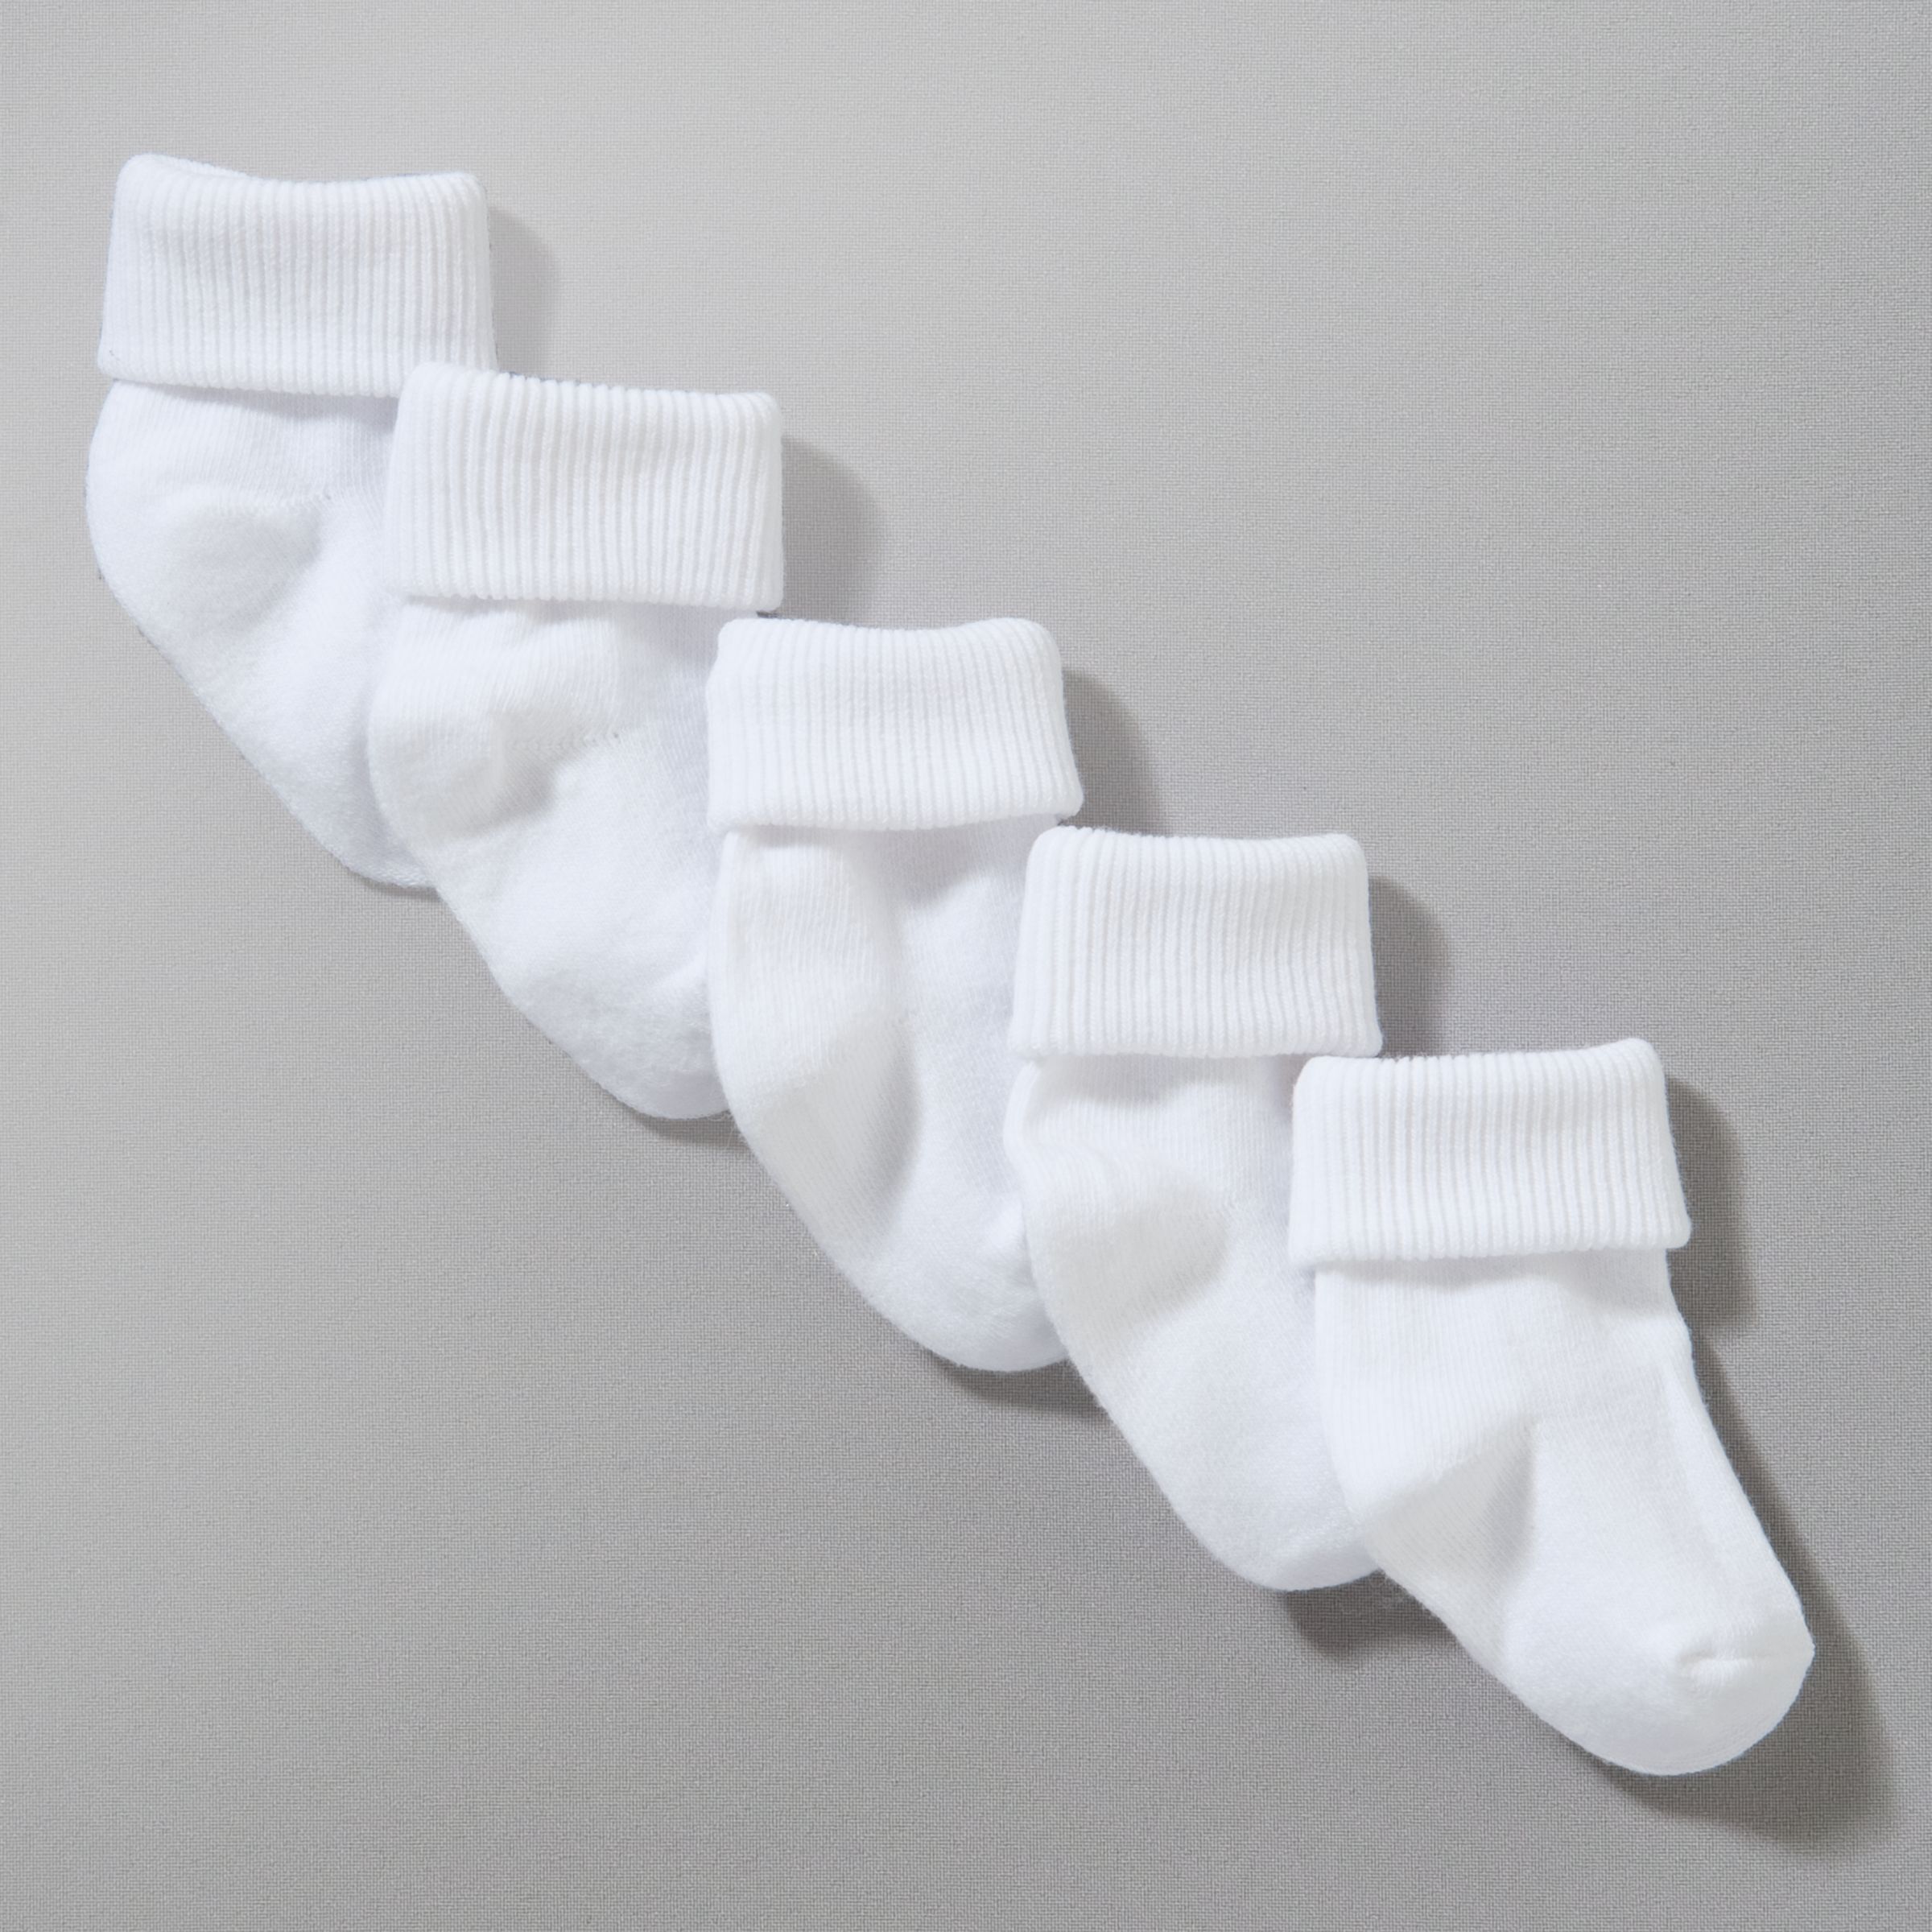 John Lewis Roll Top Socks, Pack of 5, White 43170